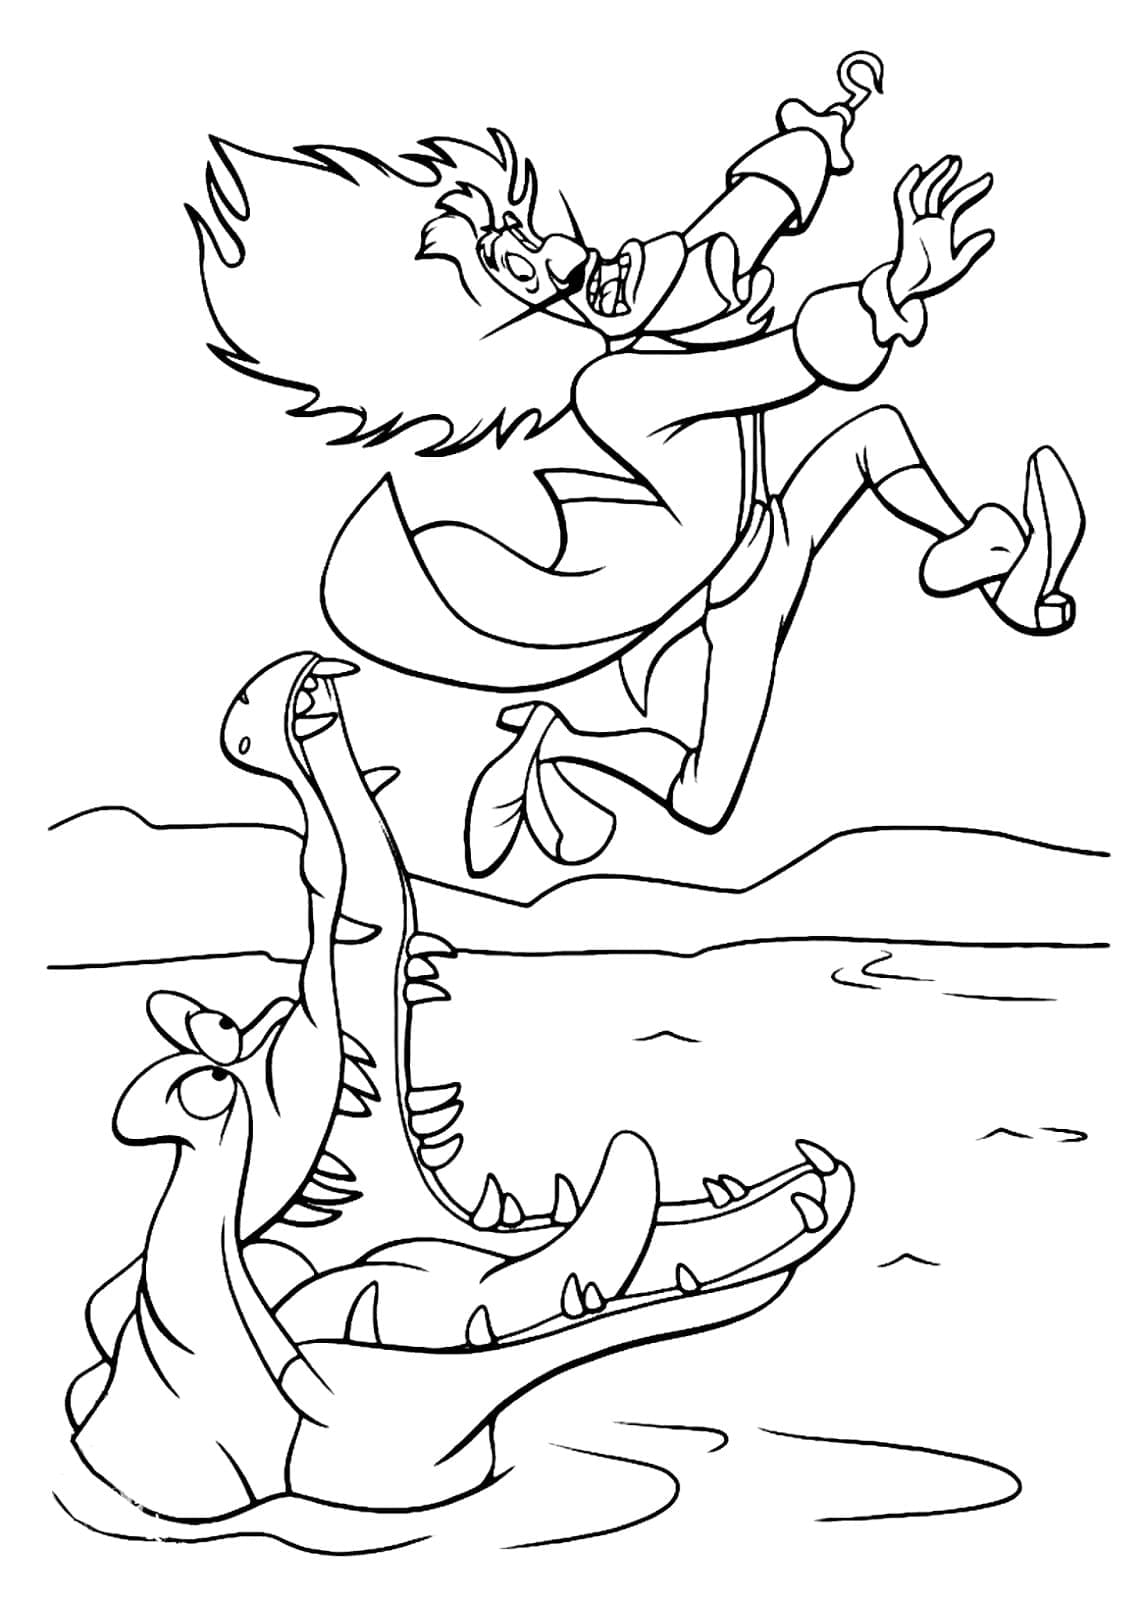 Capitaine Crochet et Tic Tac le Crocodile coloring page